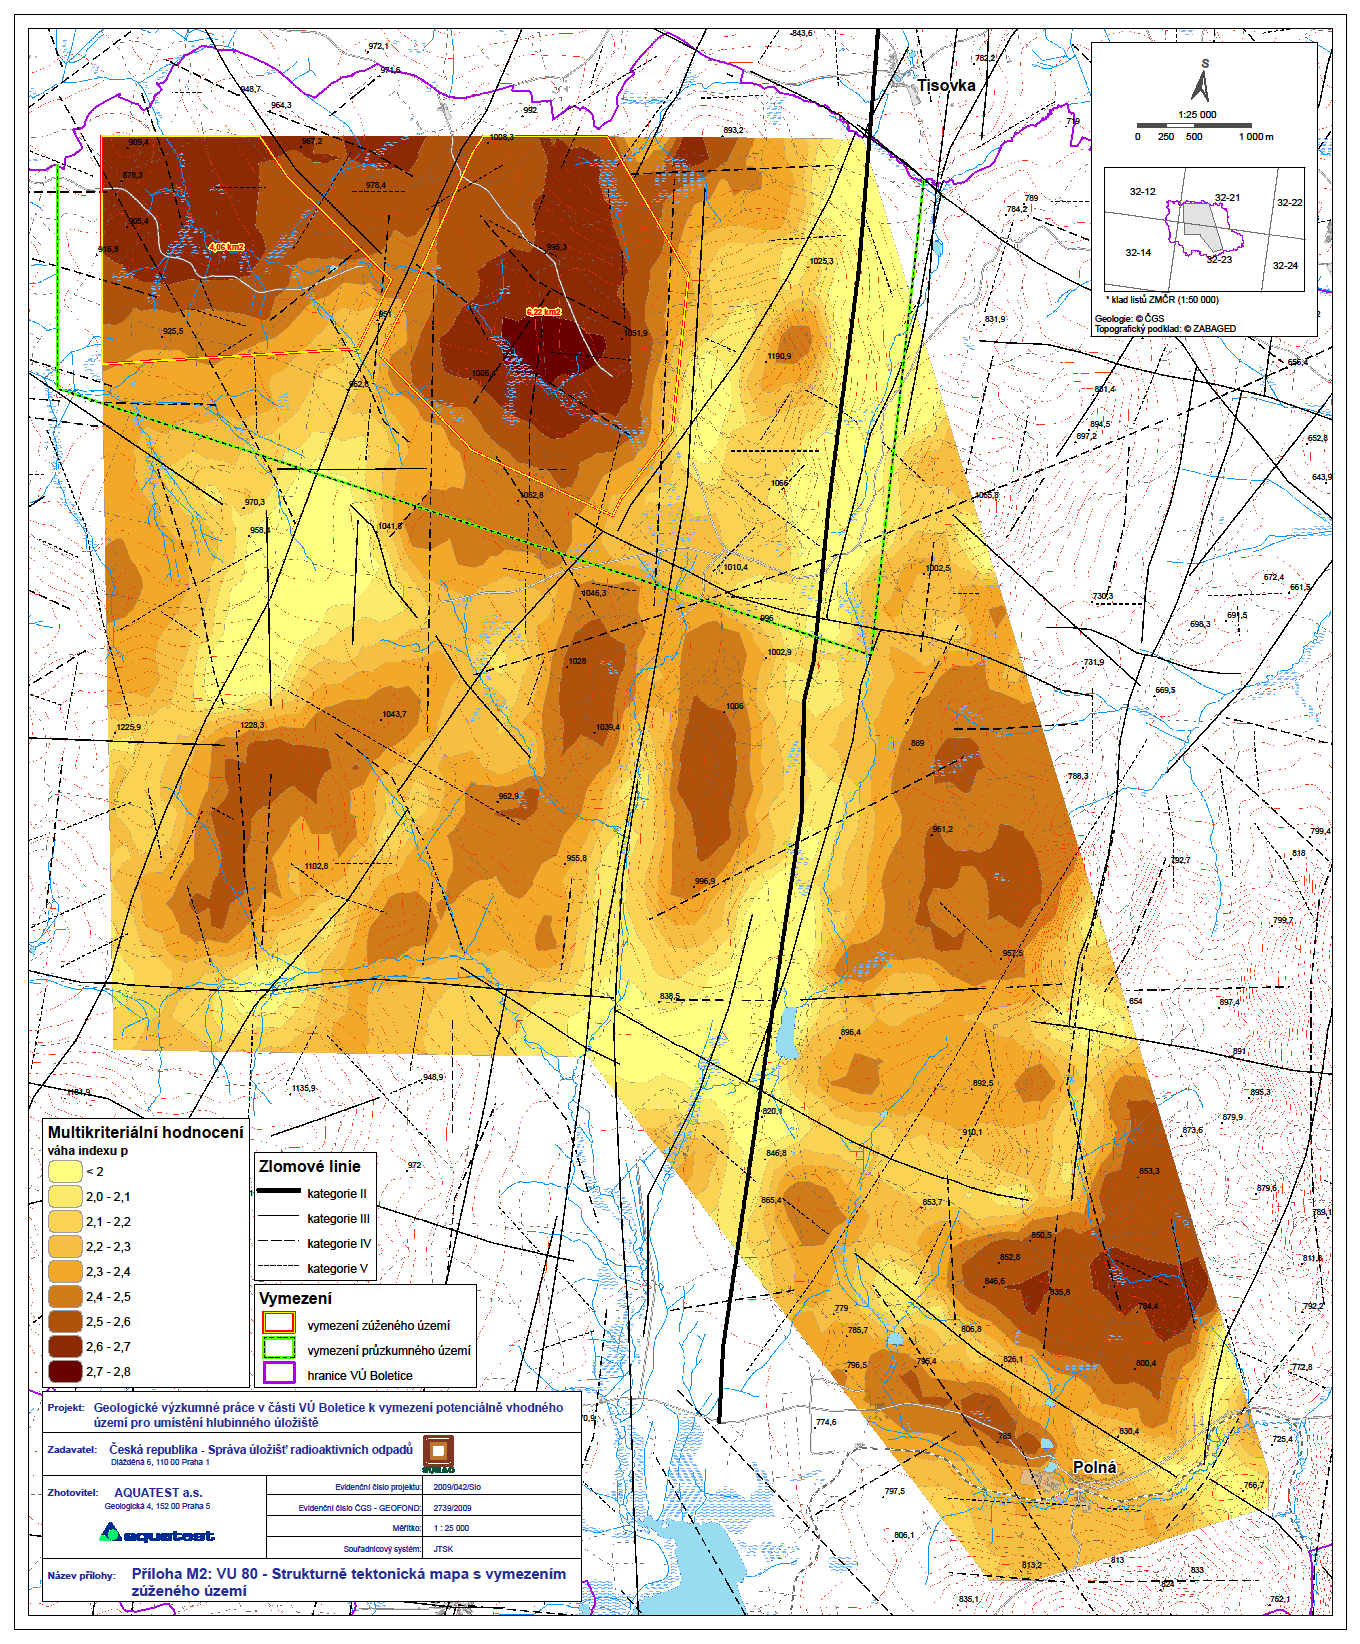 Strukturně tektonická mapa s vymezením zúženého území Zúžené území Plocha (km